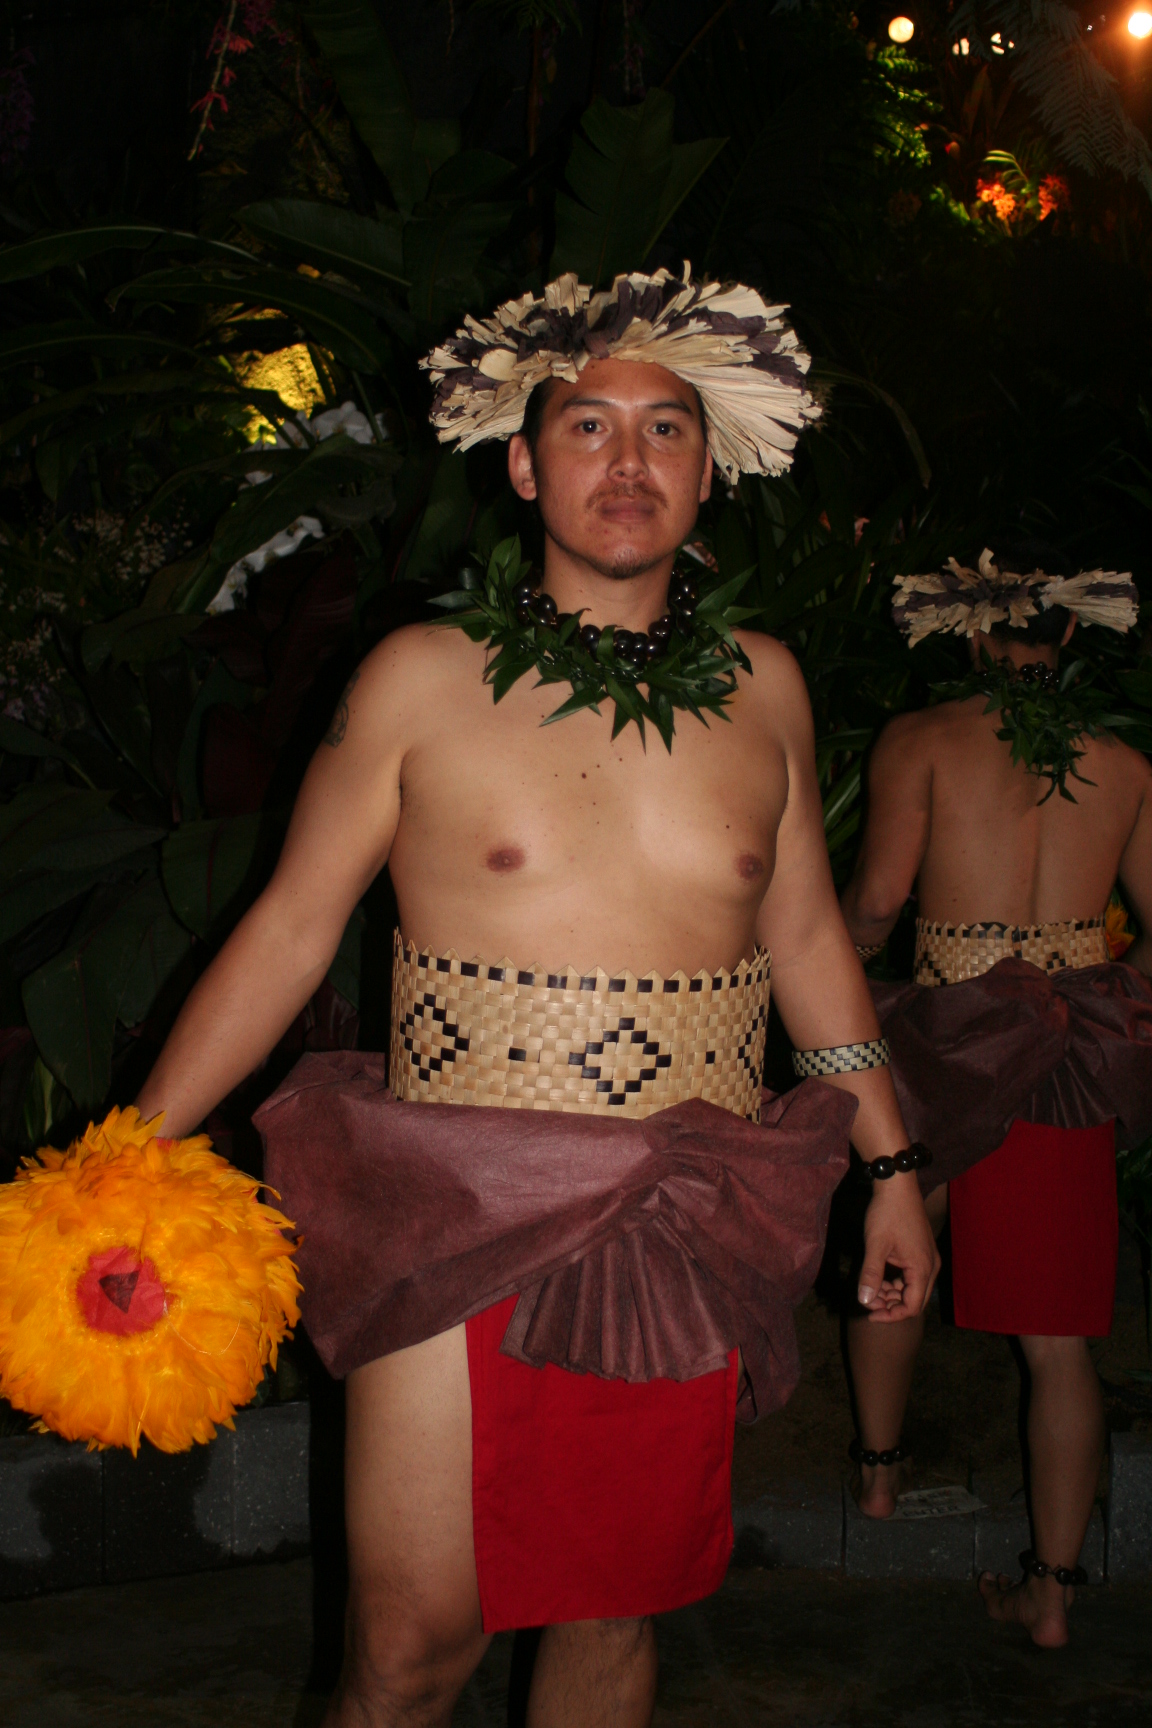 Traditional Hawaiian Dress